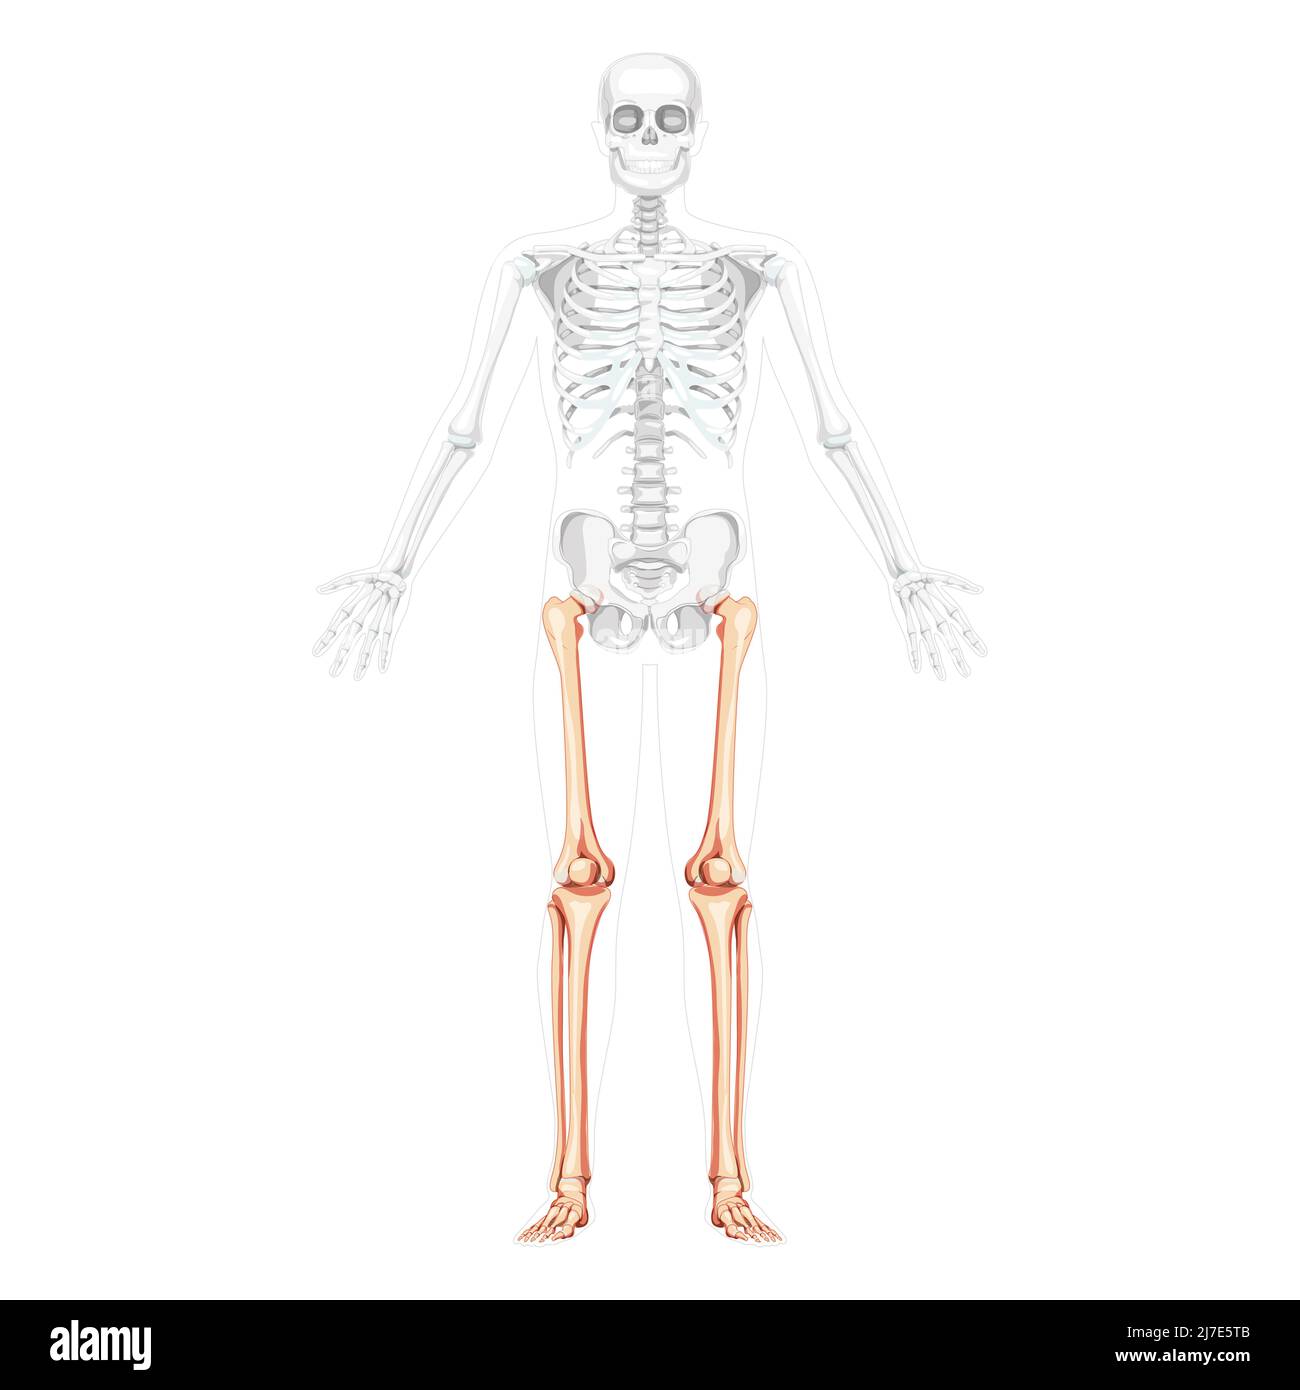 Squelette cuisses et jambes membre inférieur vue avant humaine avec position des os partiellement transparente. Forme anatomique correcte de péroné, tibia, pied concept plat réaliste Illustration vectorielle de l'anatomie isolée Illustration de Vecteur